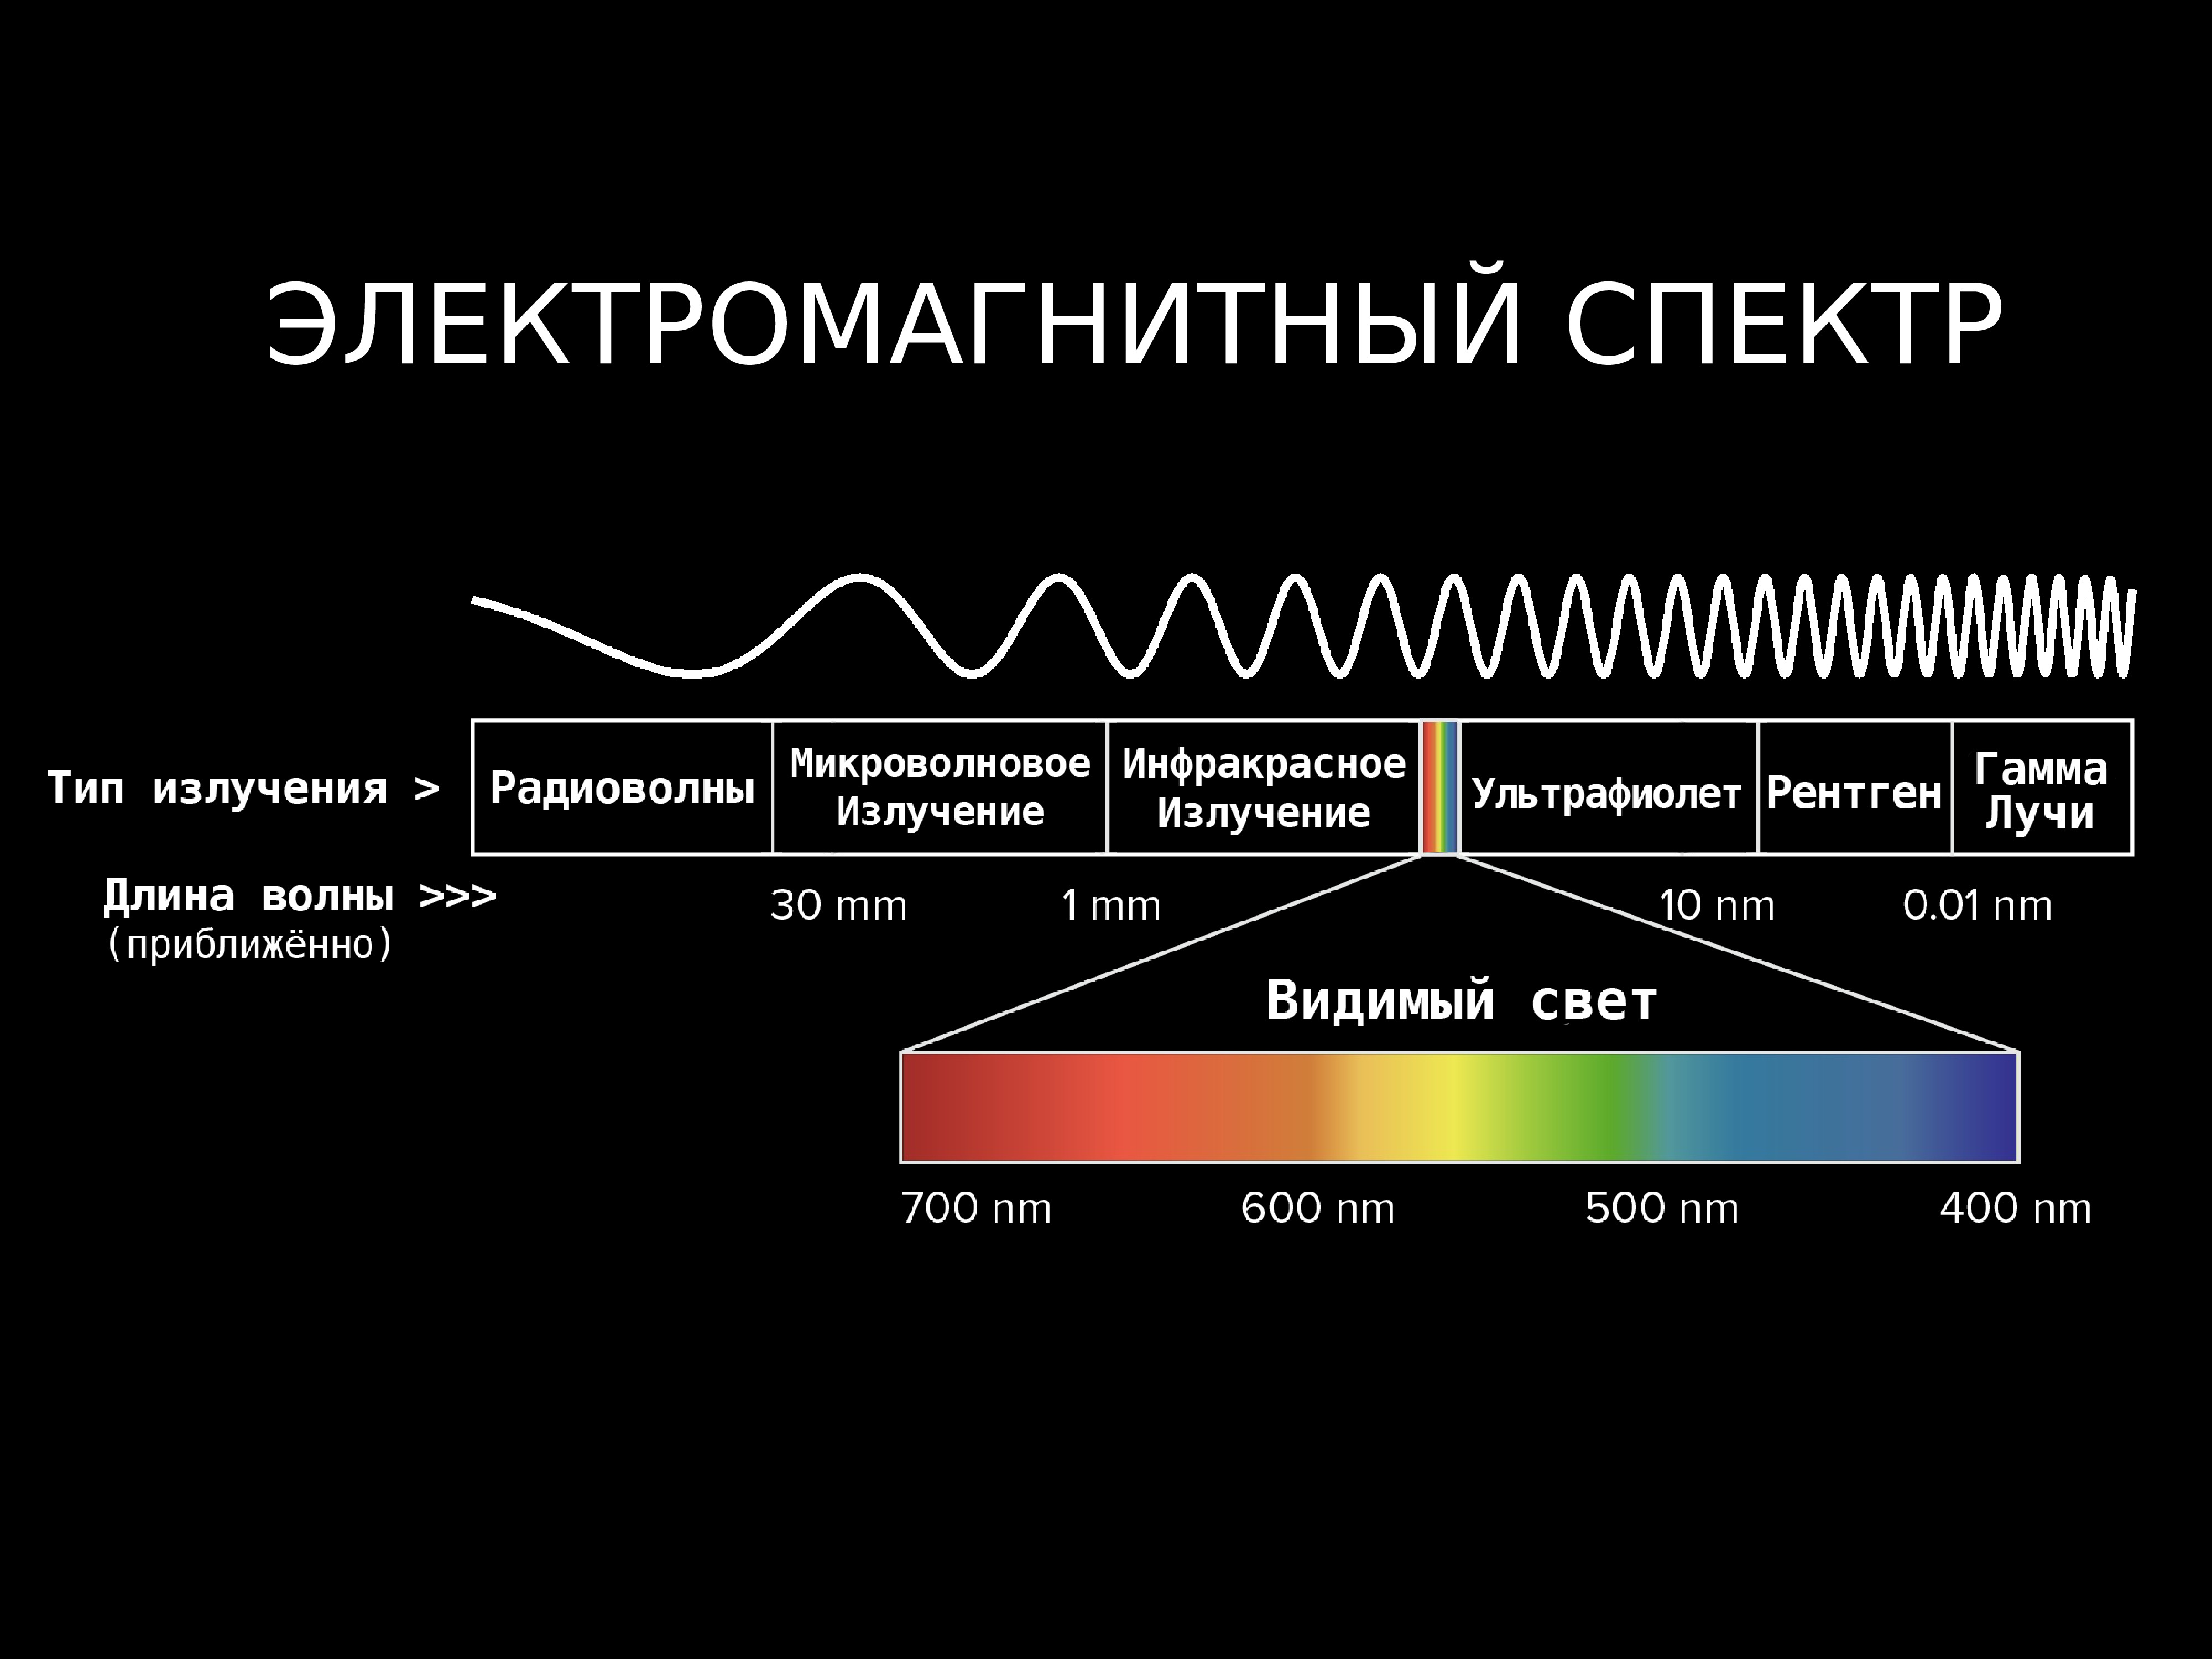 Самая низкая частота волны. Диапазоны спектра электромагнитного излучения. Электромагнитное излучение спектр электромагнитного излучения. Спектр длин волн электромагнитных излучений. Длина волны электромагнитного излучения.